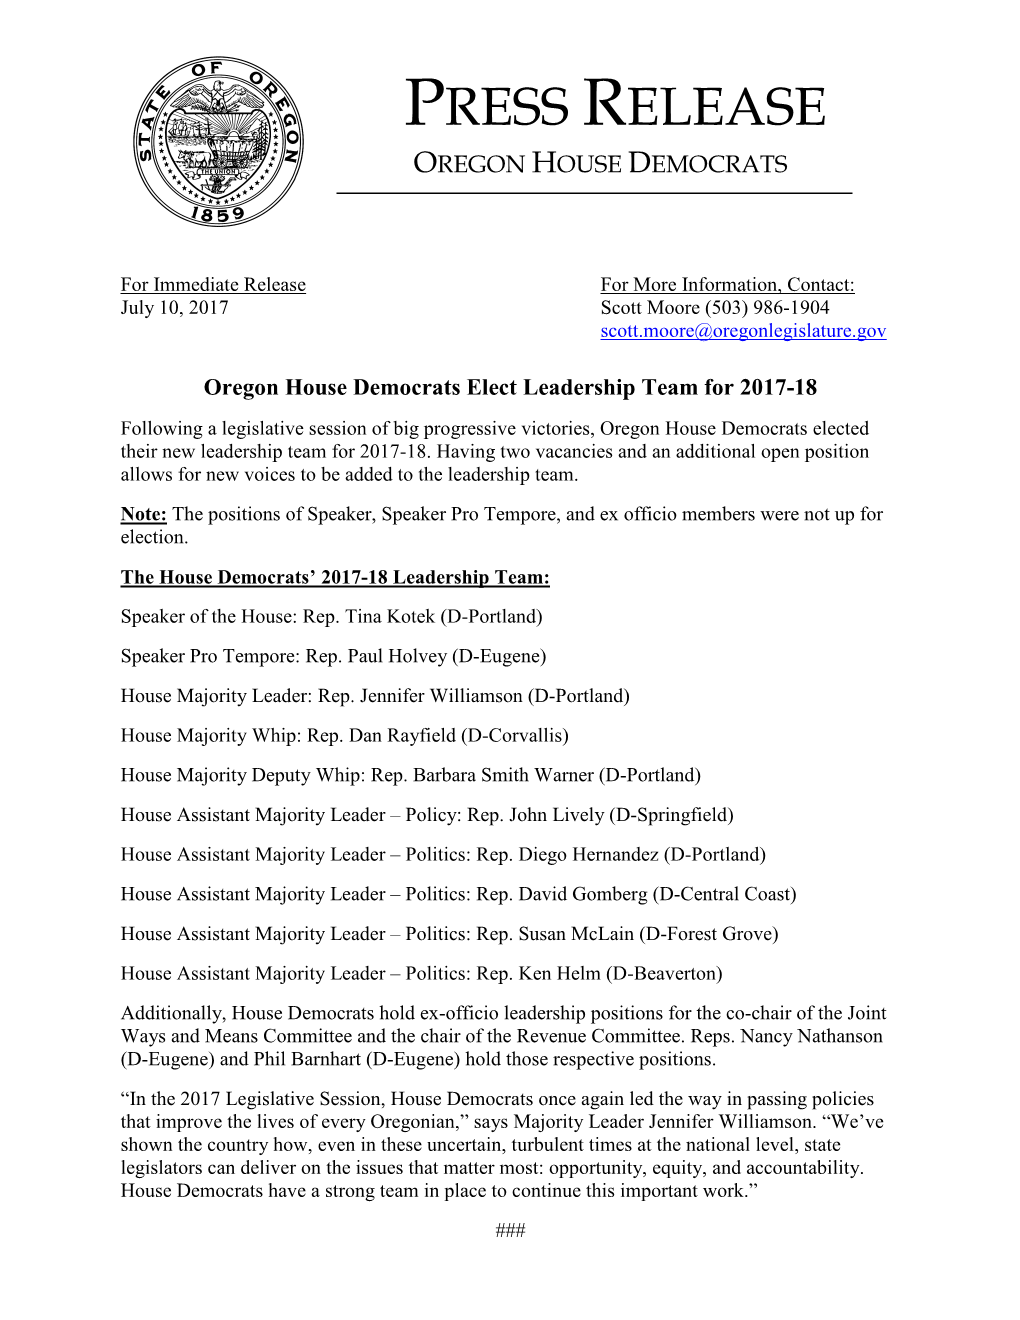 Press Release Oregon House Democrats